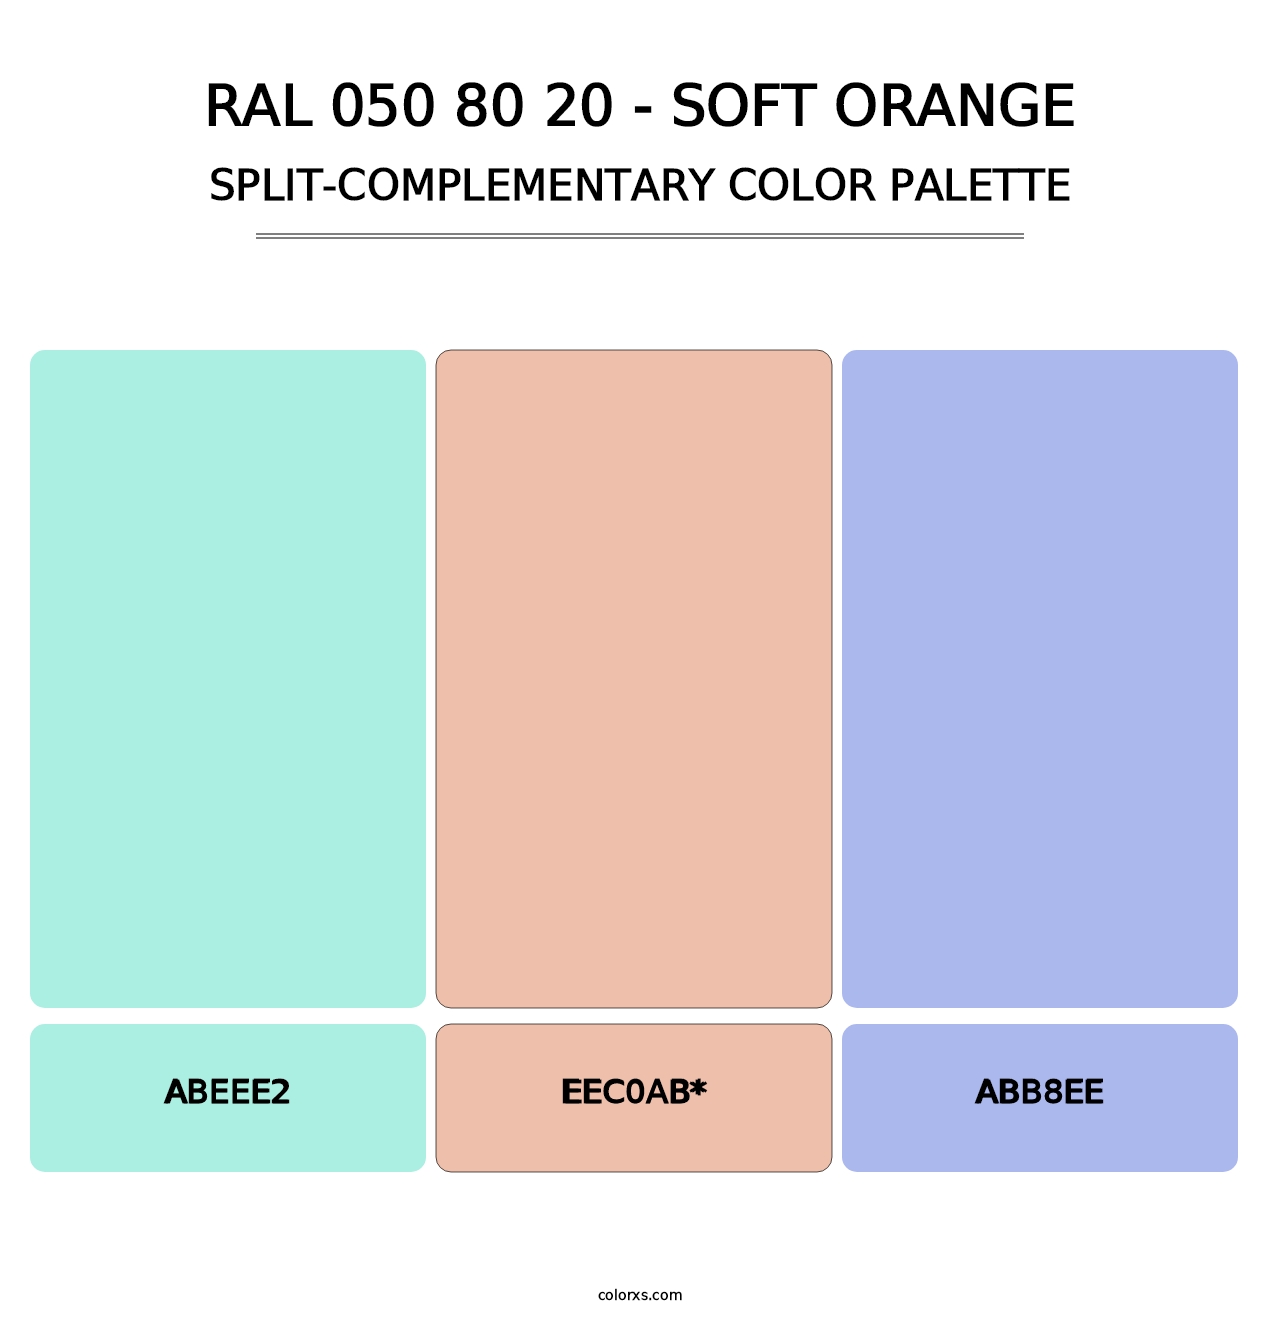 RAL 050 80 20 - Soft Orange - Split-Complementary Color Palette